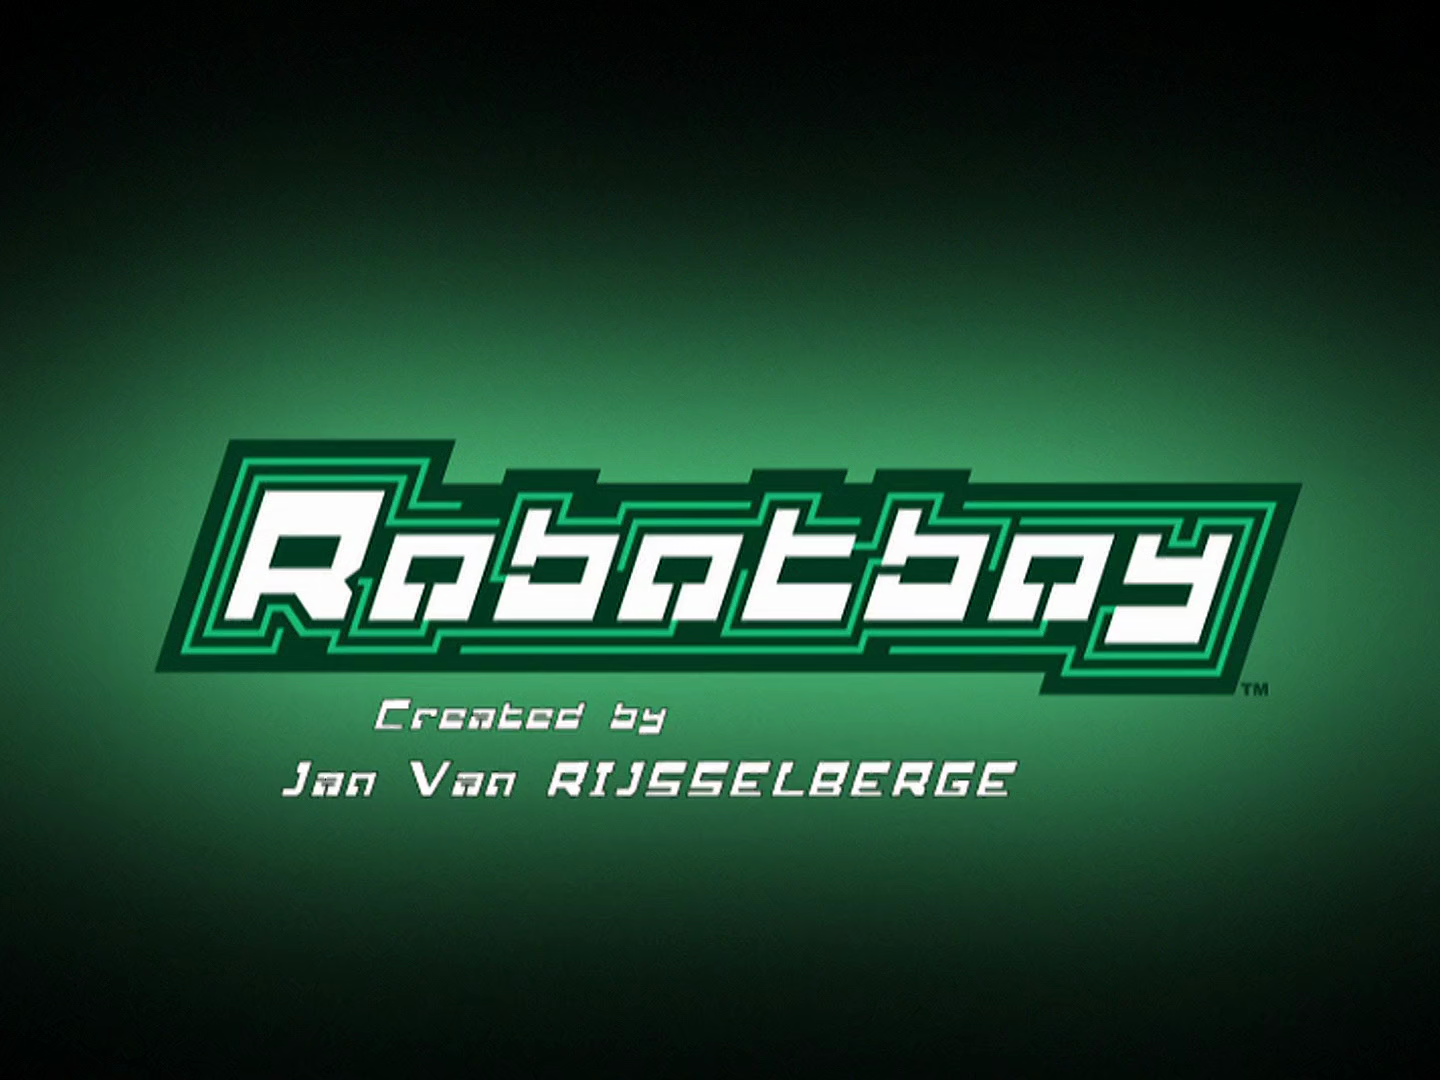 Robotboy - Runaway Robot, Season 1, Episode 35, HD Full Episodes